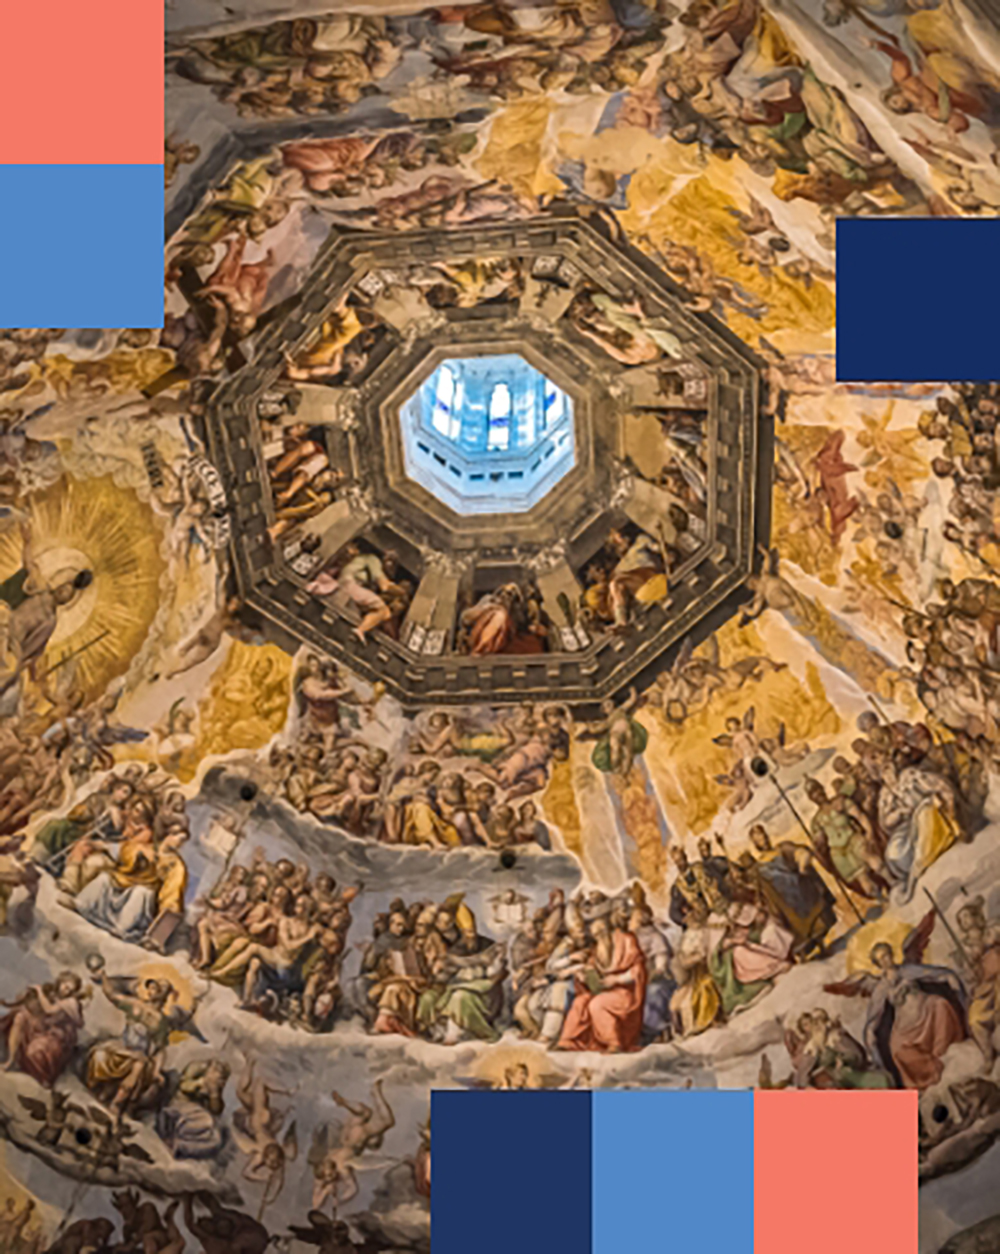 Afrescos na cúpula da Catedral de Florença - mobile